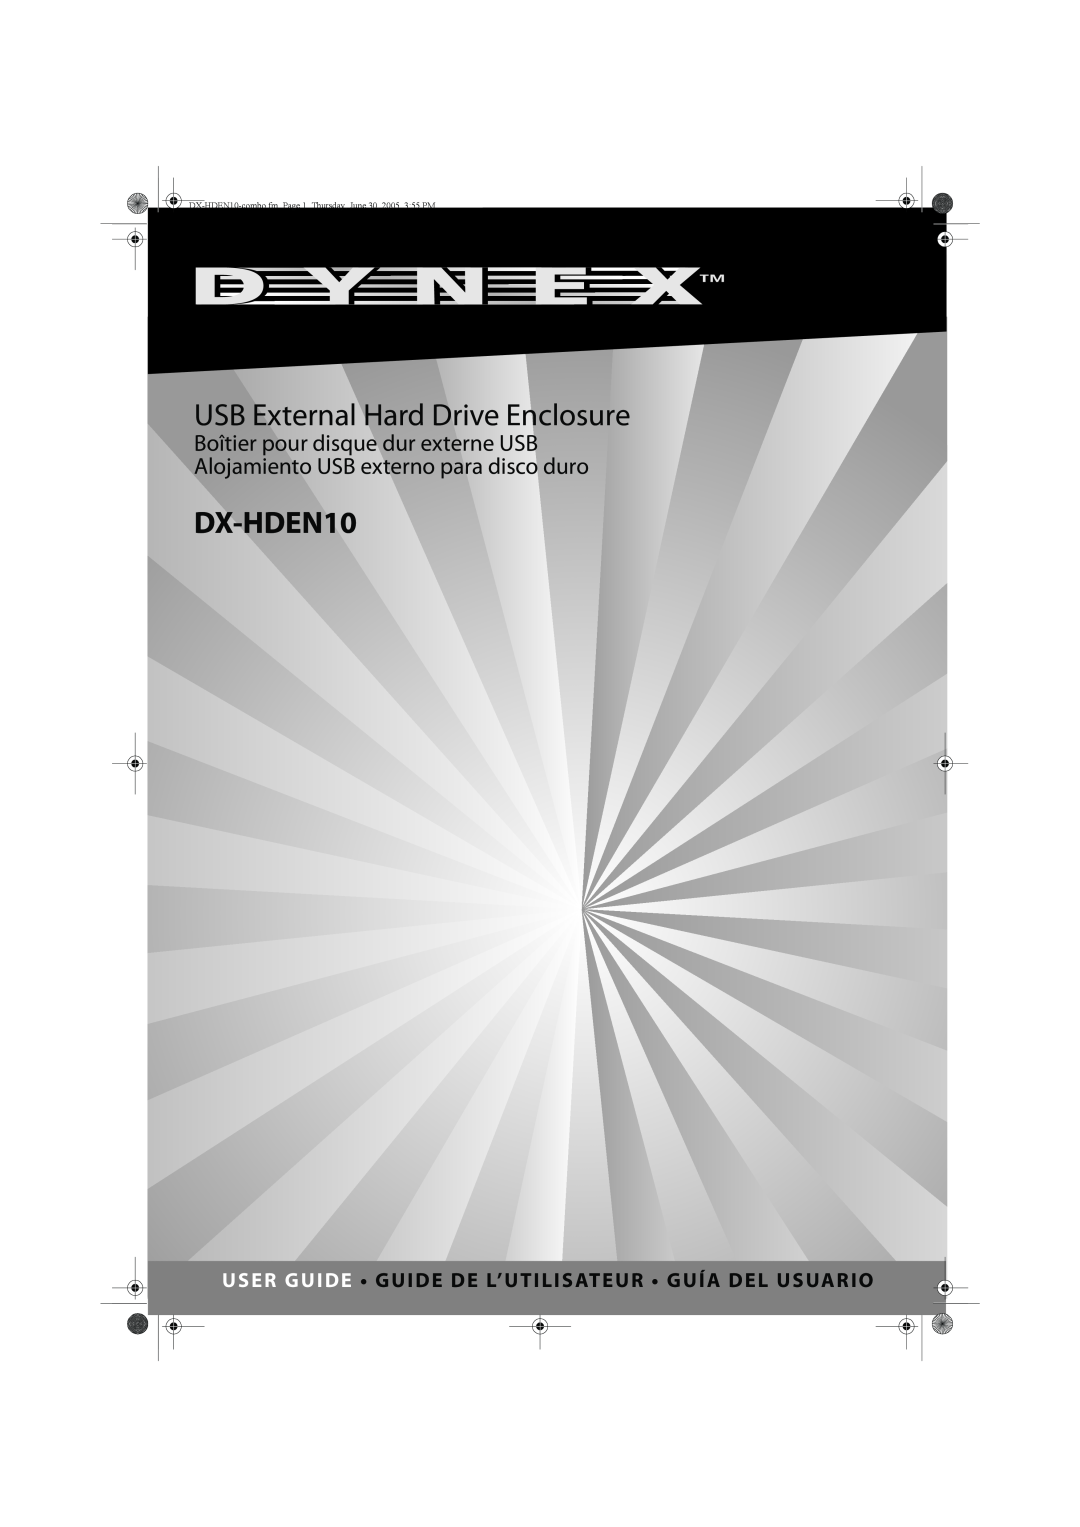 Dynex DX-HDEN10 manual USB External Hard Drive Enclosure, Boîtier pour disque dur externe USB 